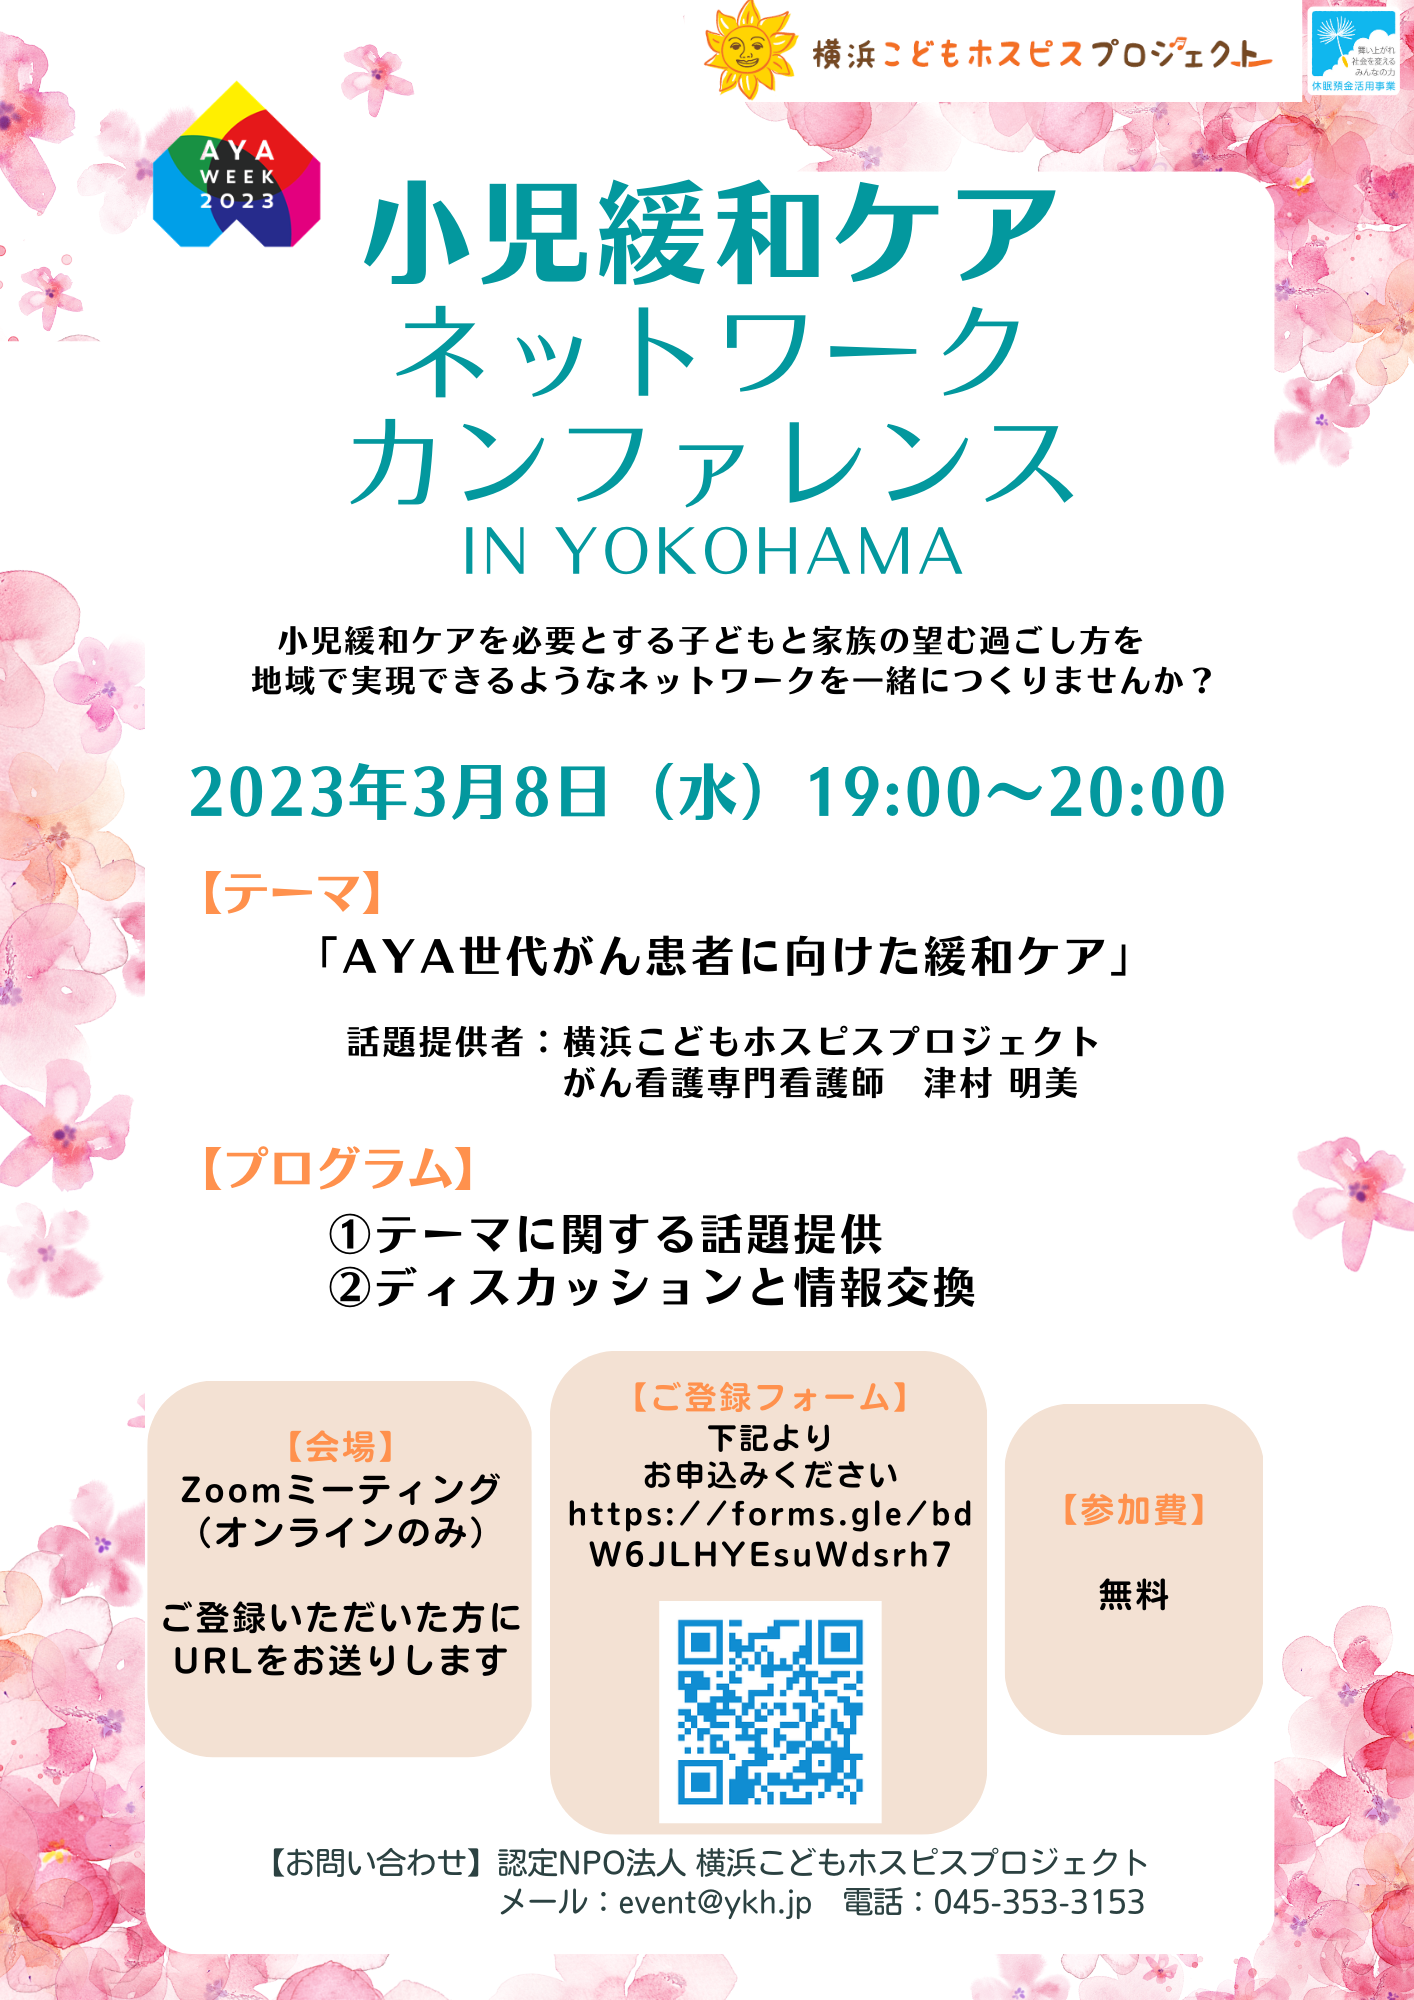 【3月8日開催・AYA WEEK】小児緩和ケアネットワークカンファレンス in YOKOHAMA